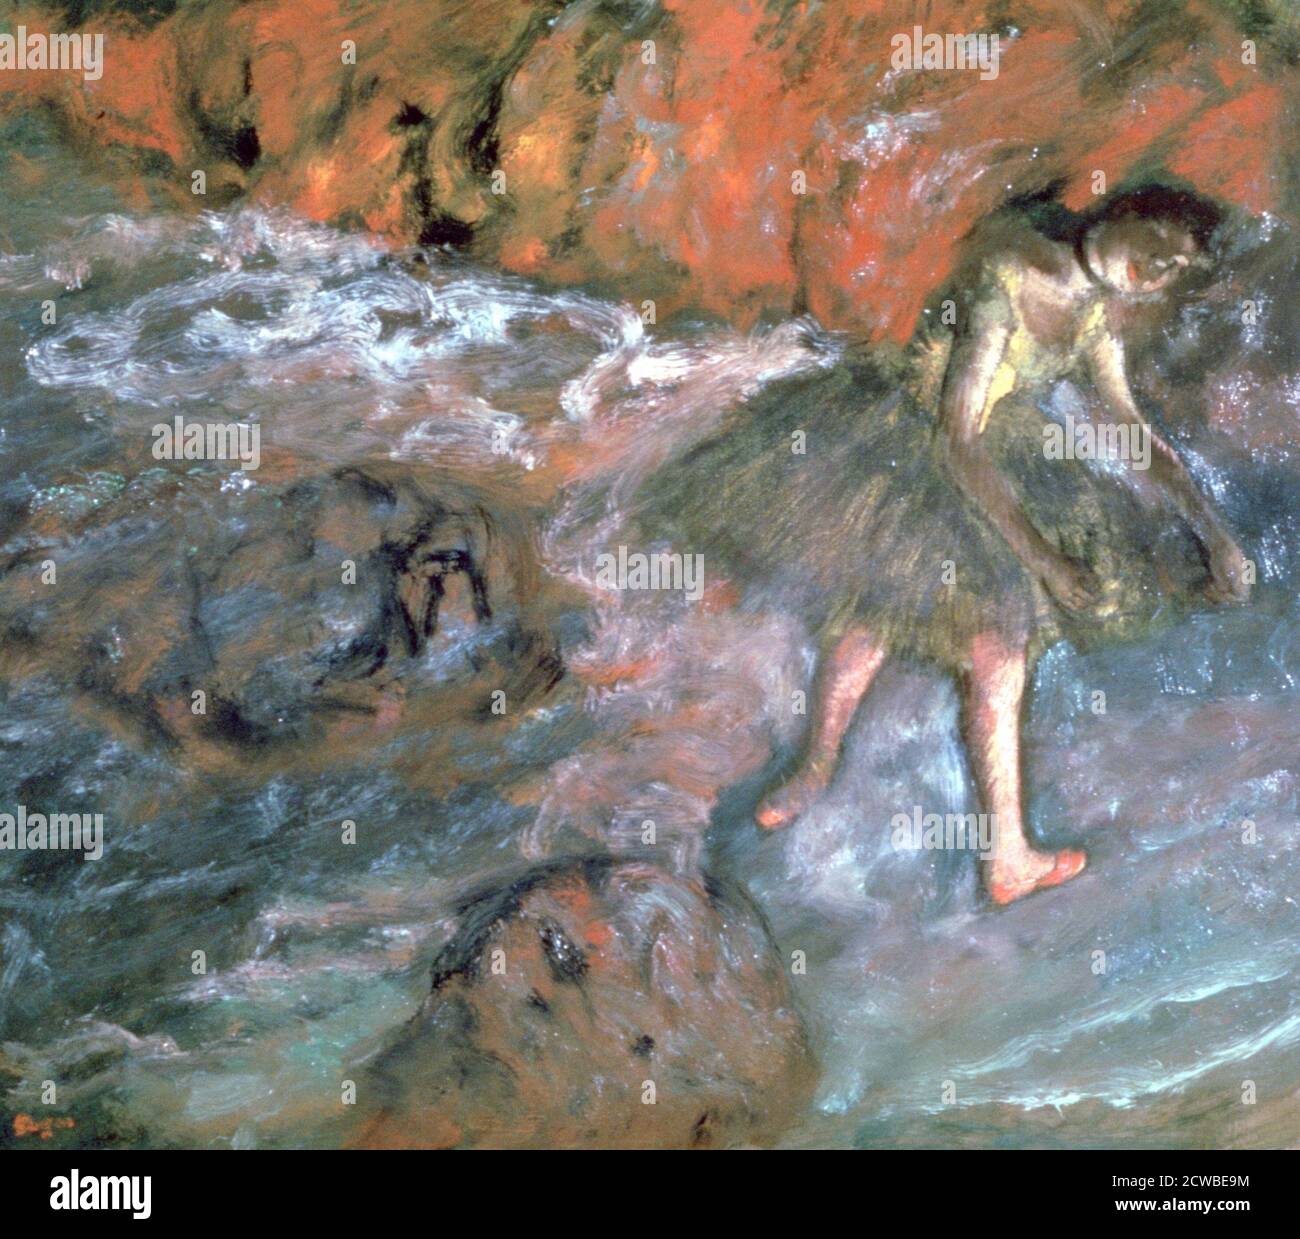 Ruso Ballerina', 1880. Artista: Edgar Degas. Edgar Degas (1834-1917) fue un artista francés conocido por sus dibujos en tonos pastel y pinturas al óleo de bailarinas. Degas también produjo esculturas, grabados y dibujos de bronce. Foto de stock